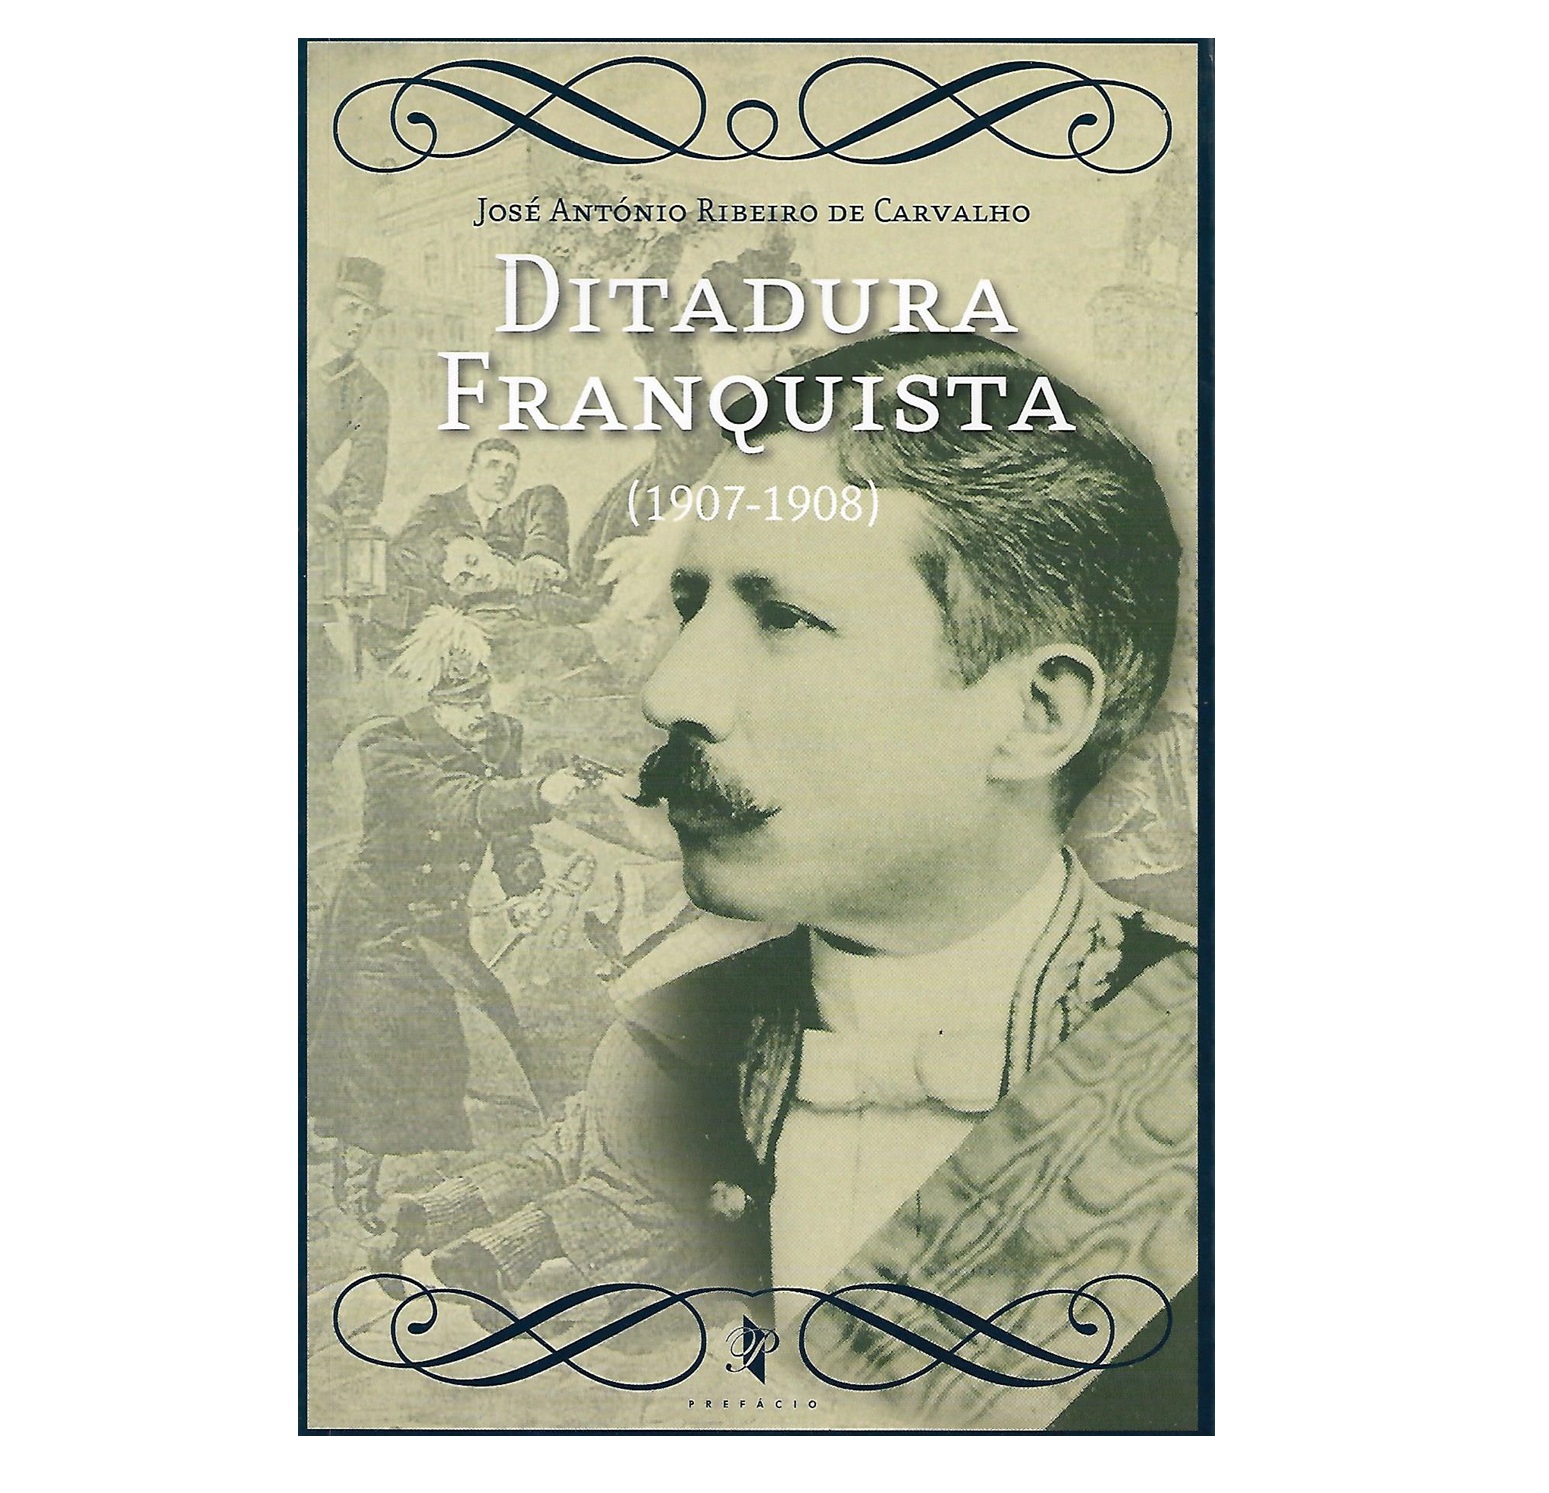 DITADURA FRANQUISTA (1907-1908)